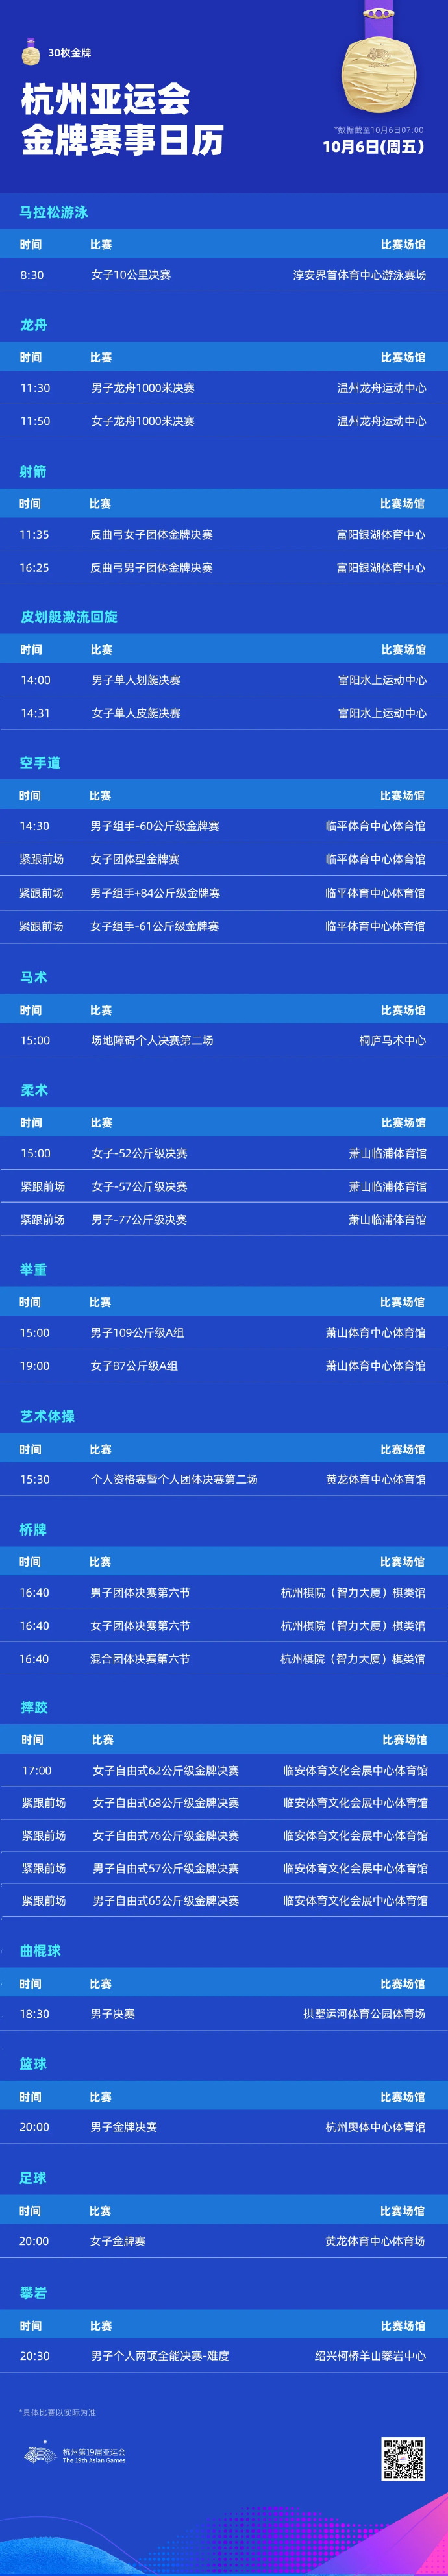 10月6日杭州亚运会赛程直播时间表 10月6日杭州亚运会赛程直播时间表最新